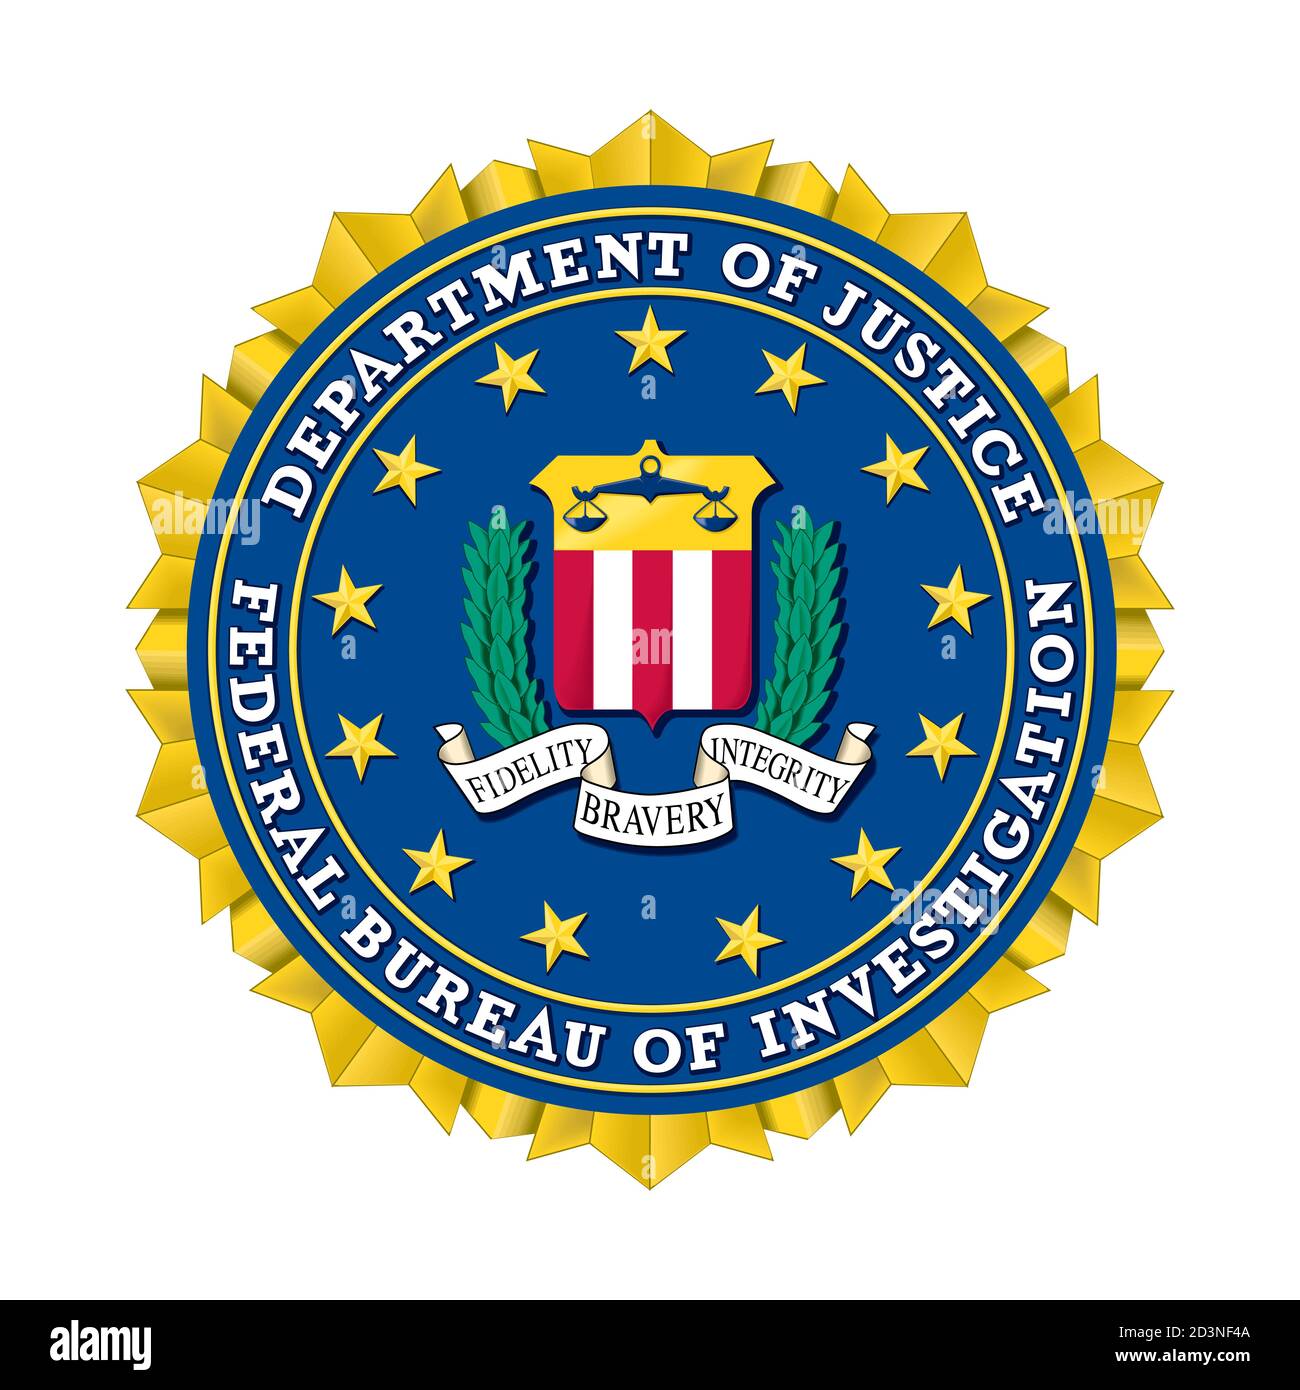 emblema-vectorial-del-fbi-oficina-federal-de-investigacion-2d3nf4a.jpg